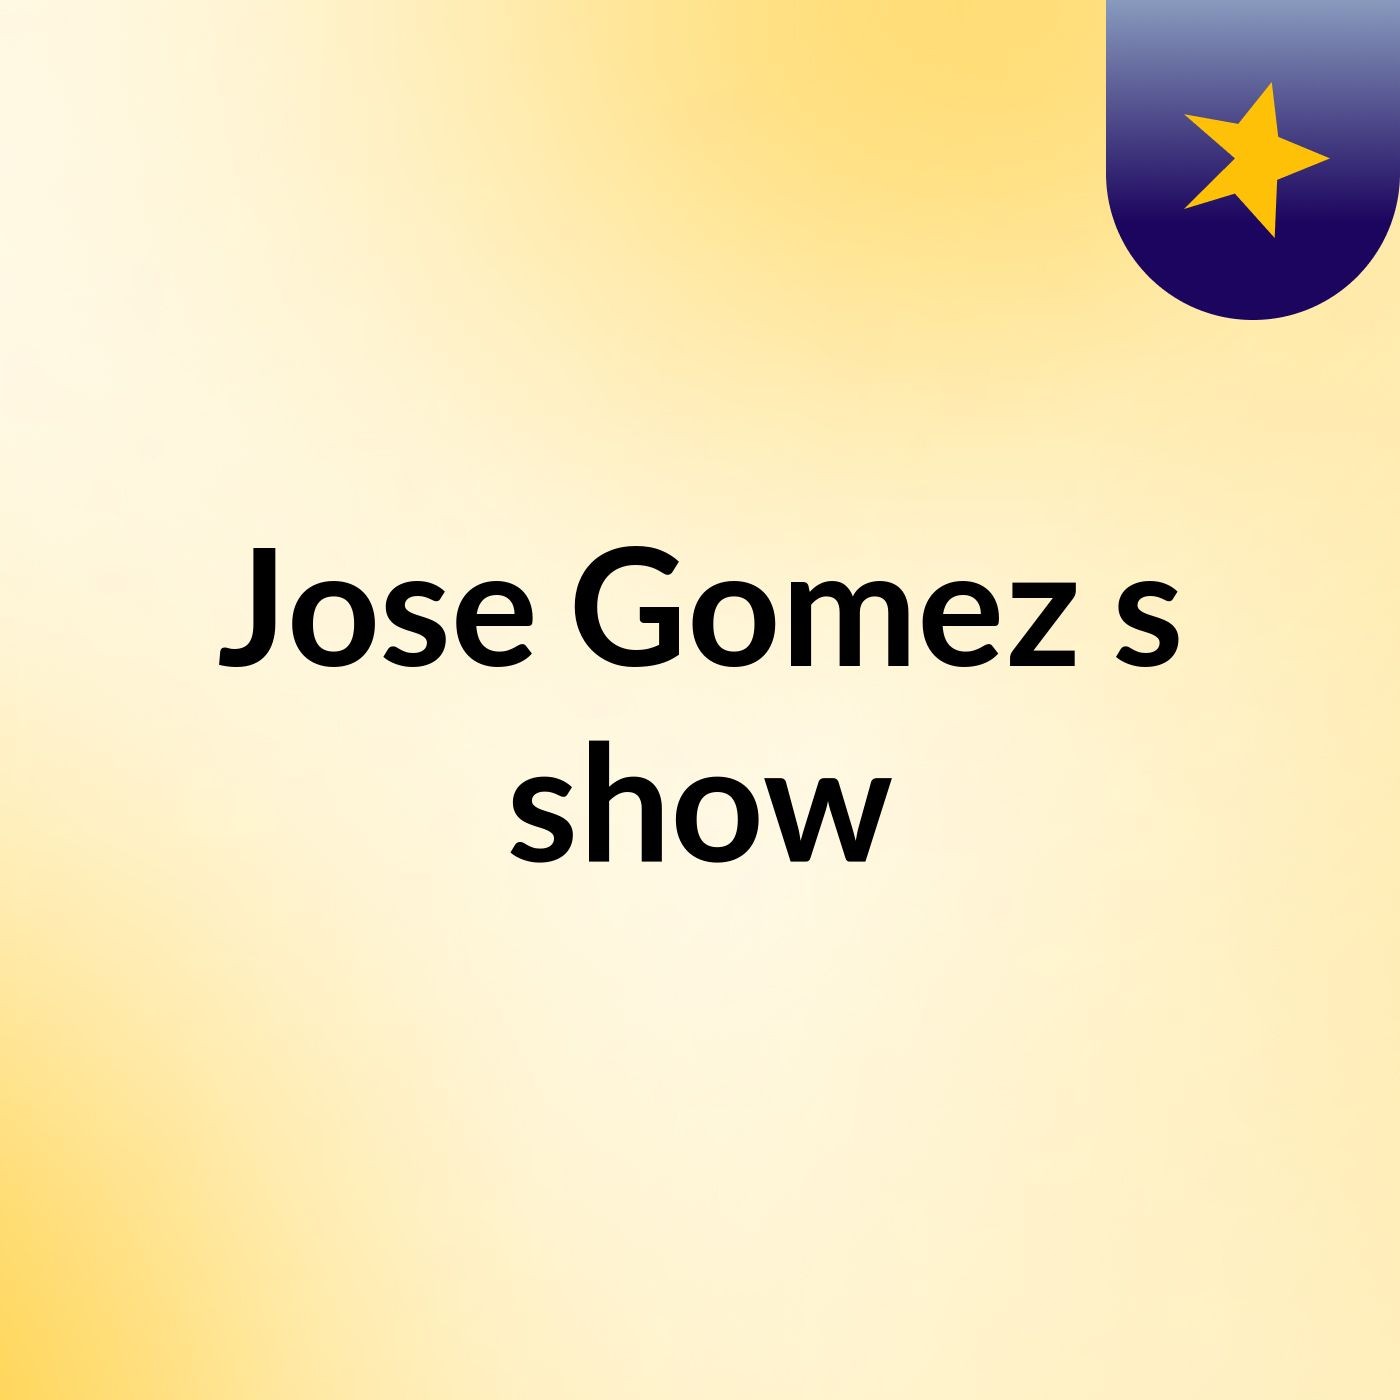 Jose Gomez's show